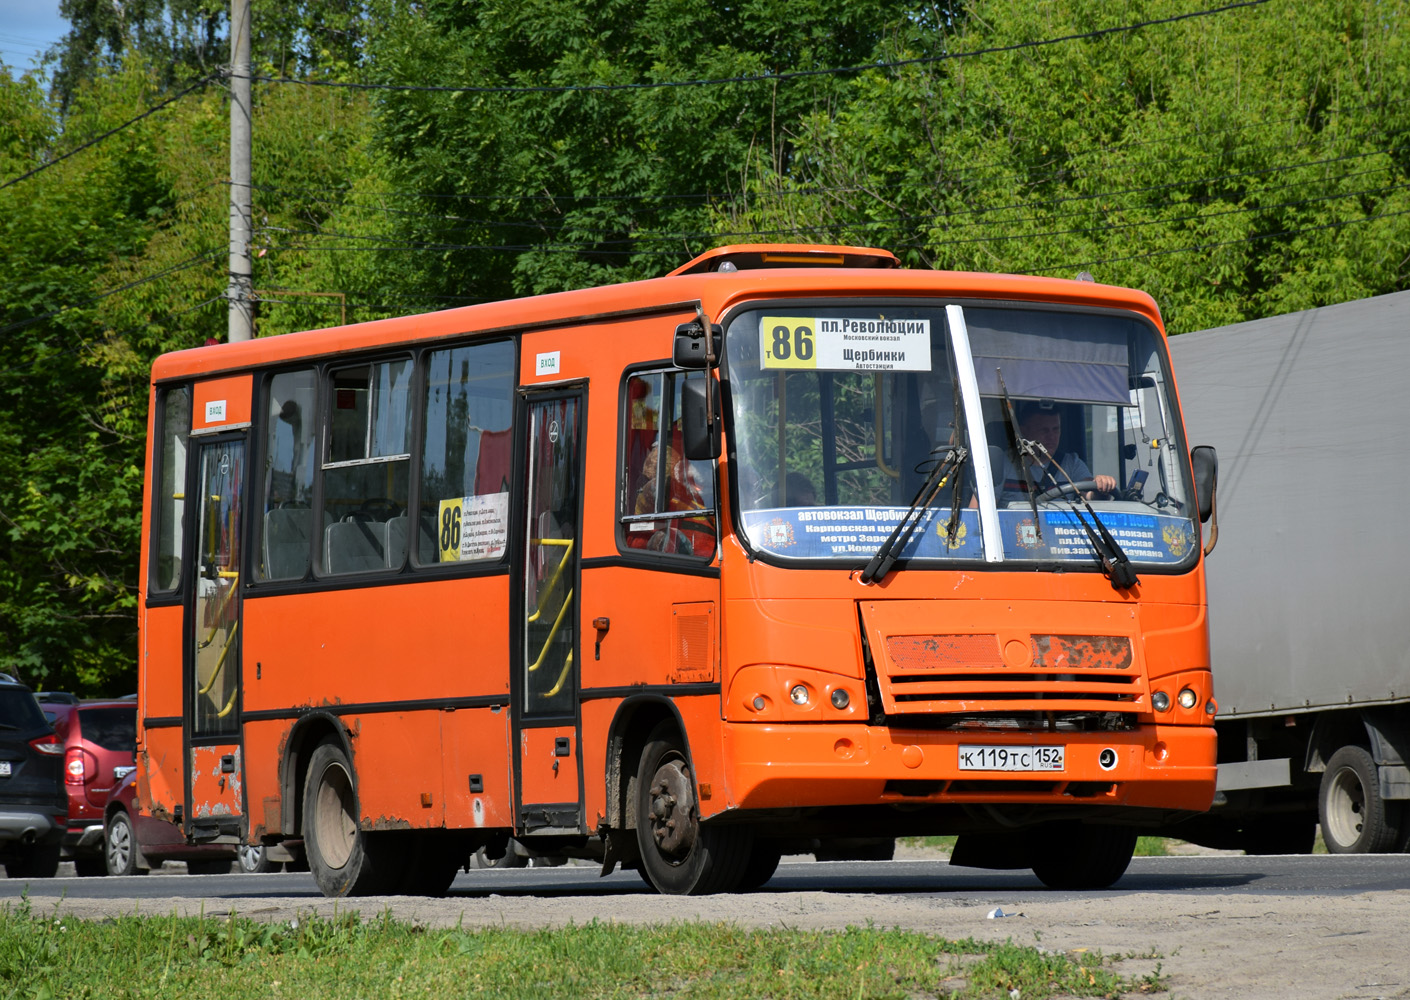 Nizhegorodskaya region, PAZ-320402-05 Nr. К 119 ТС 152